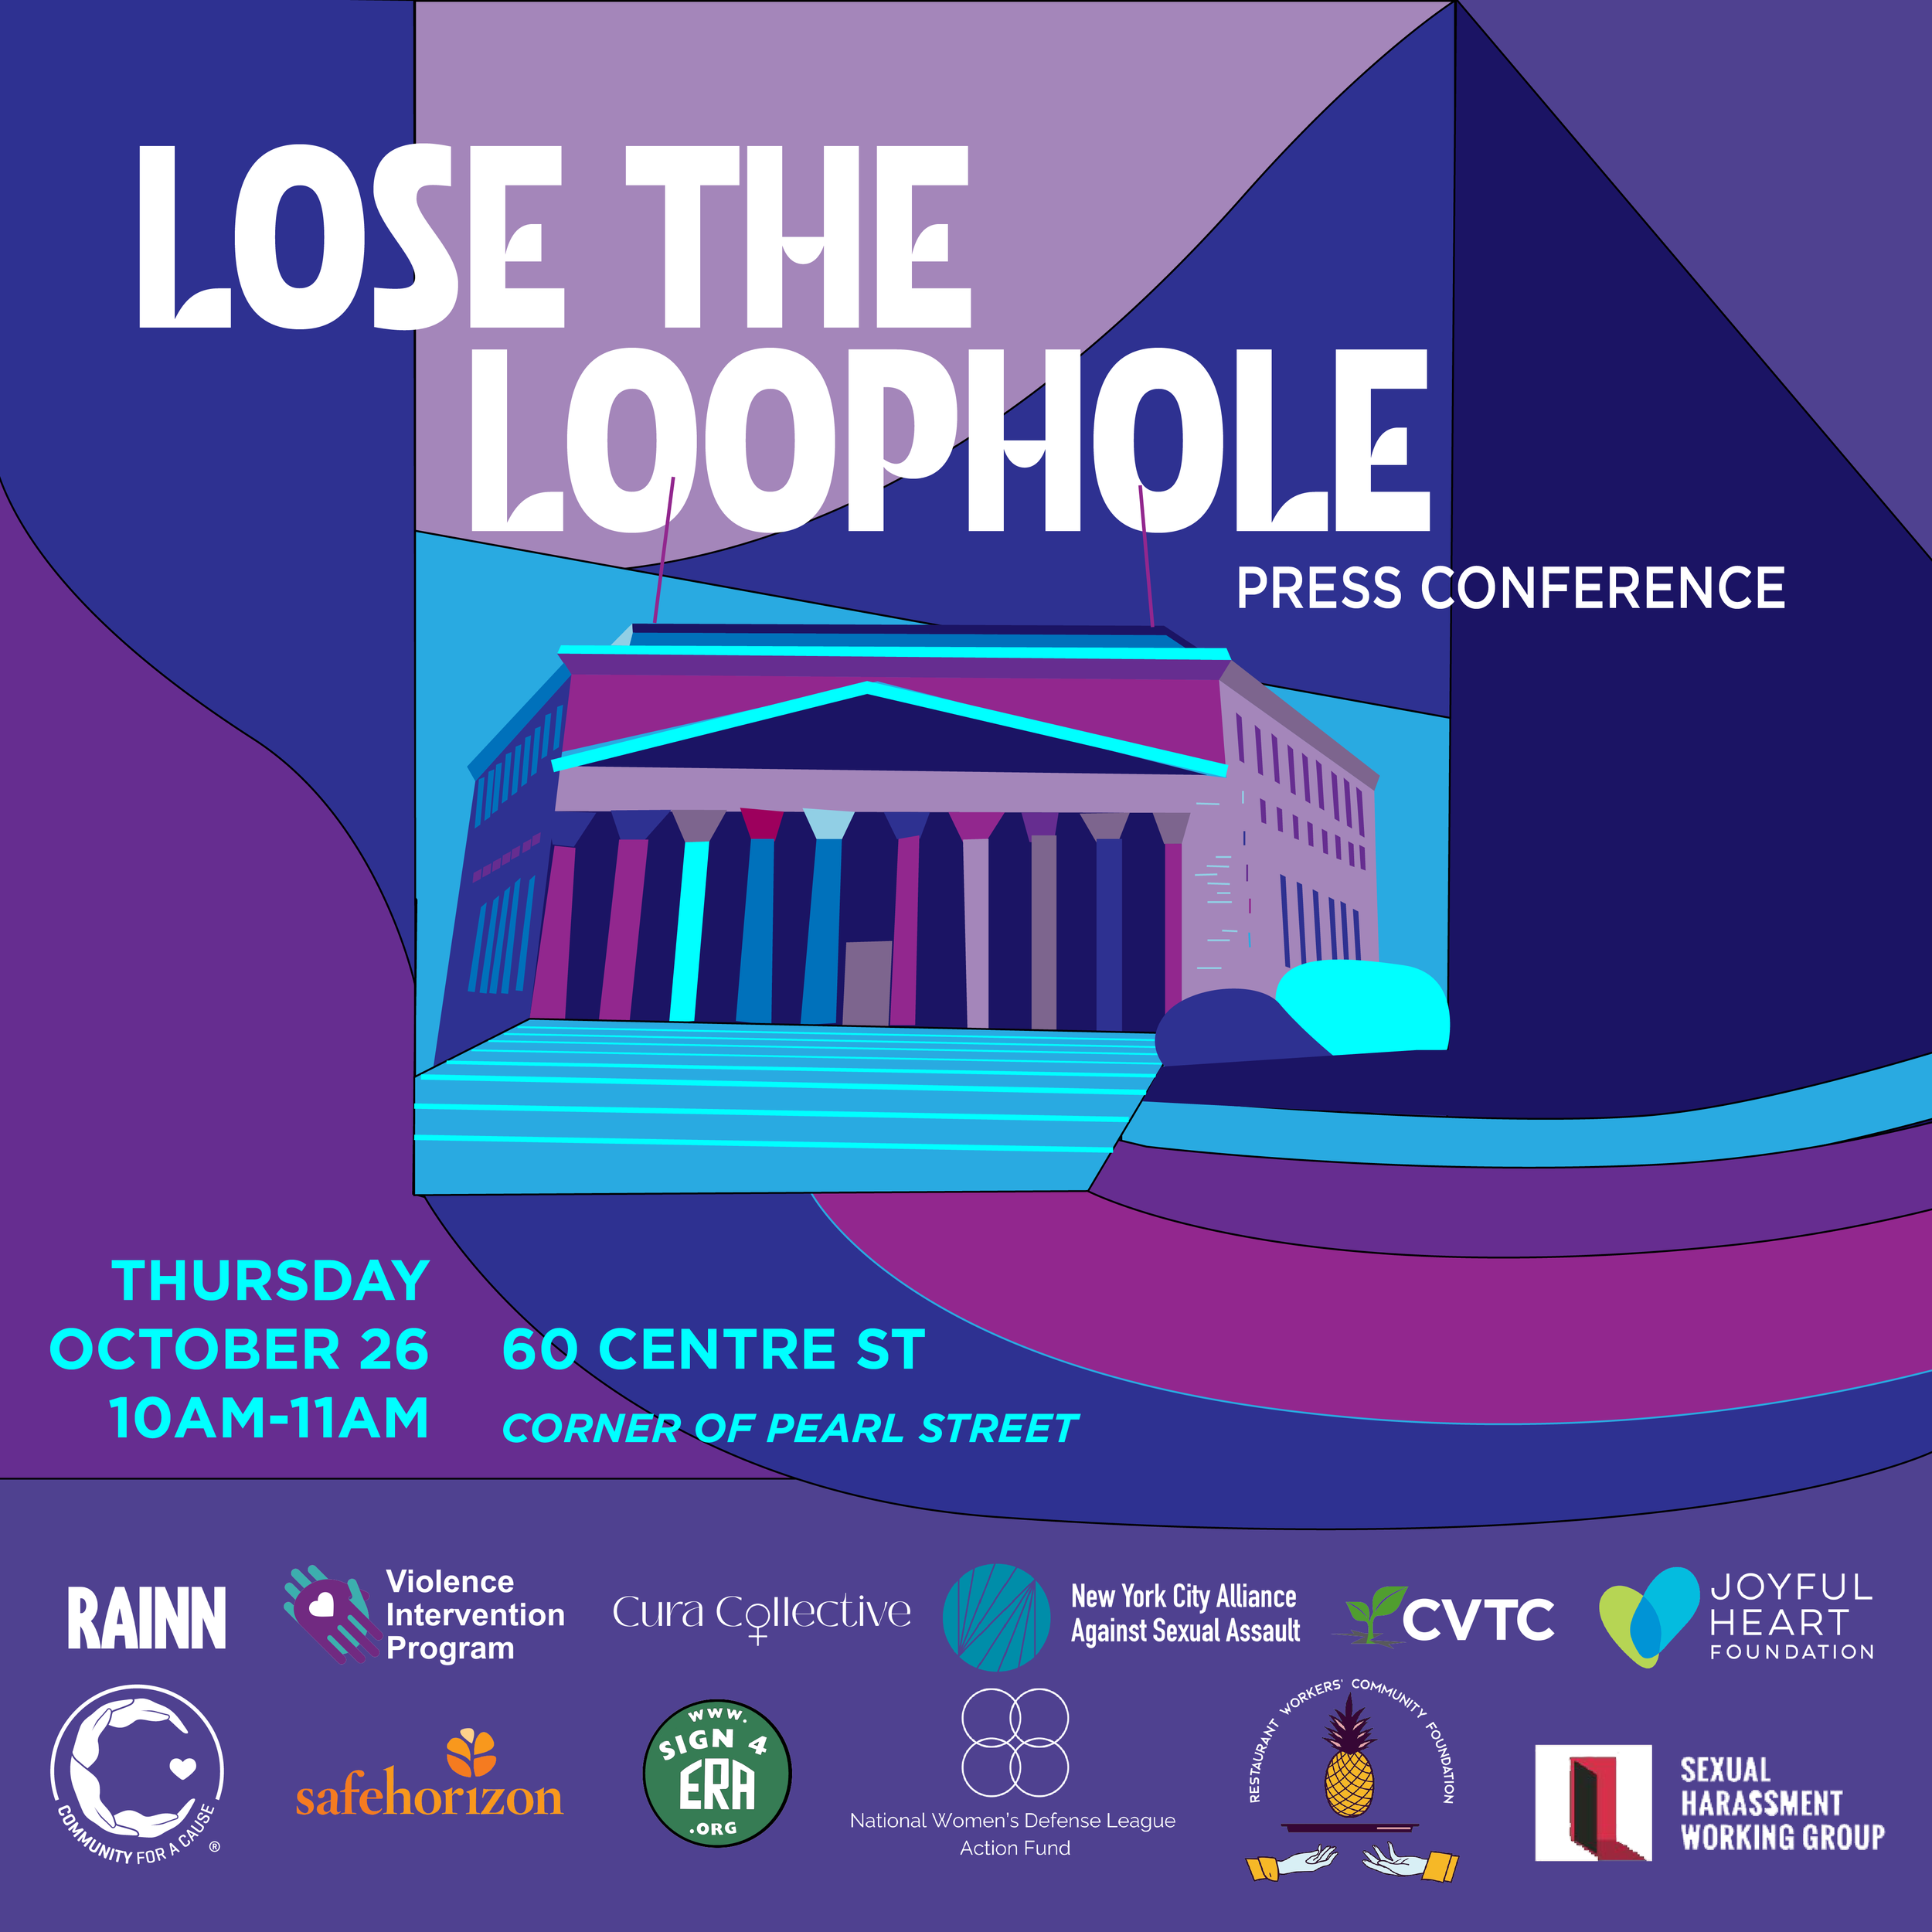 LoseTheLoophole_PressConference_004.png